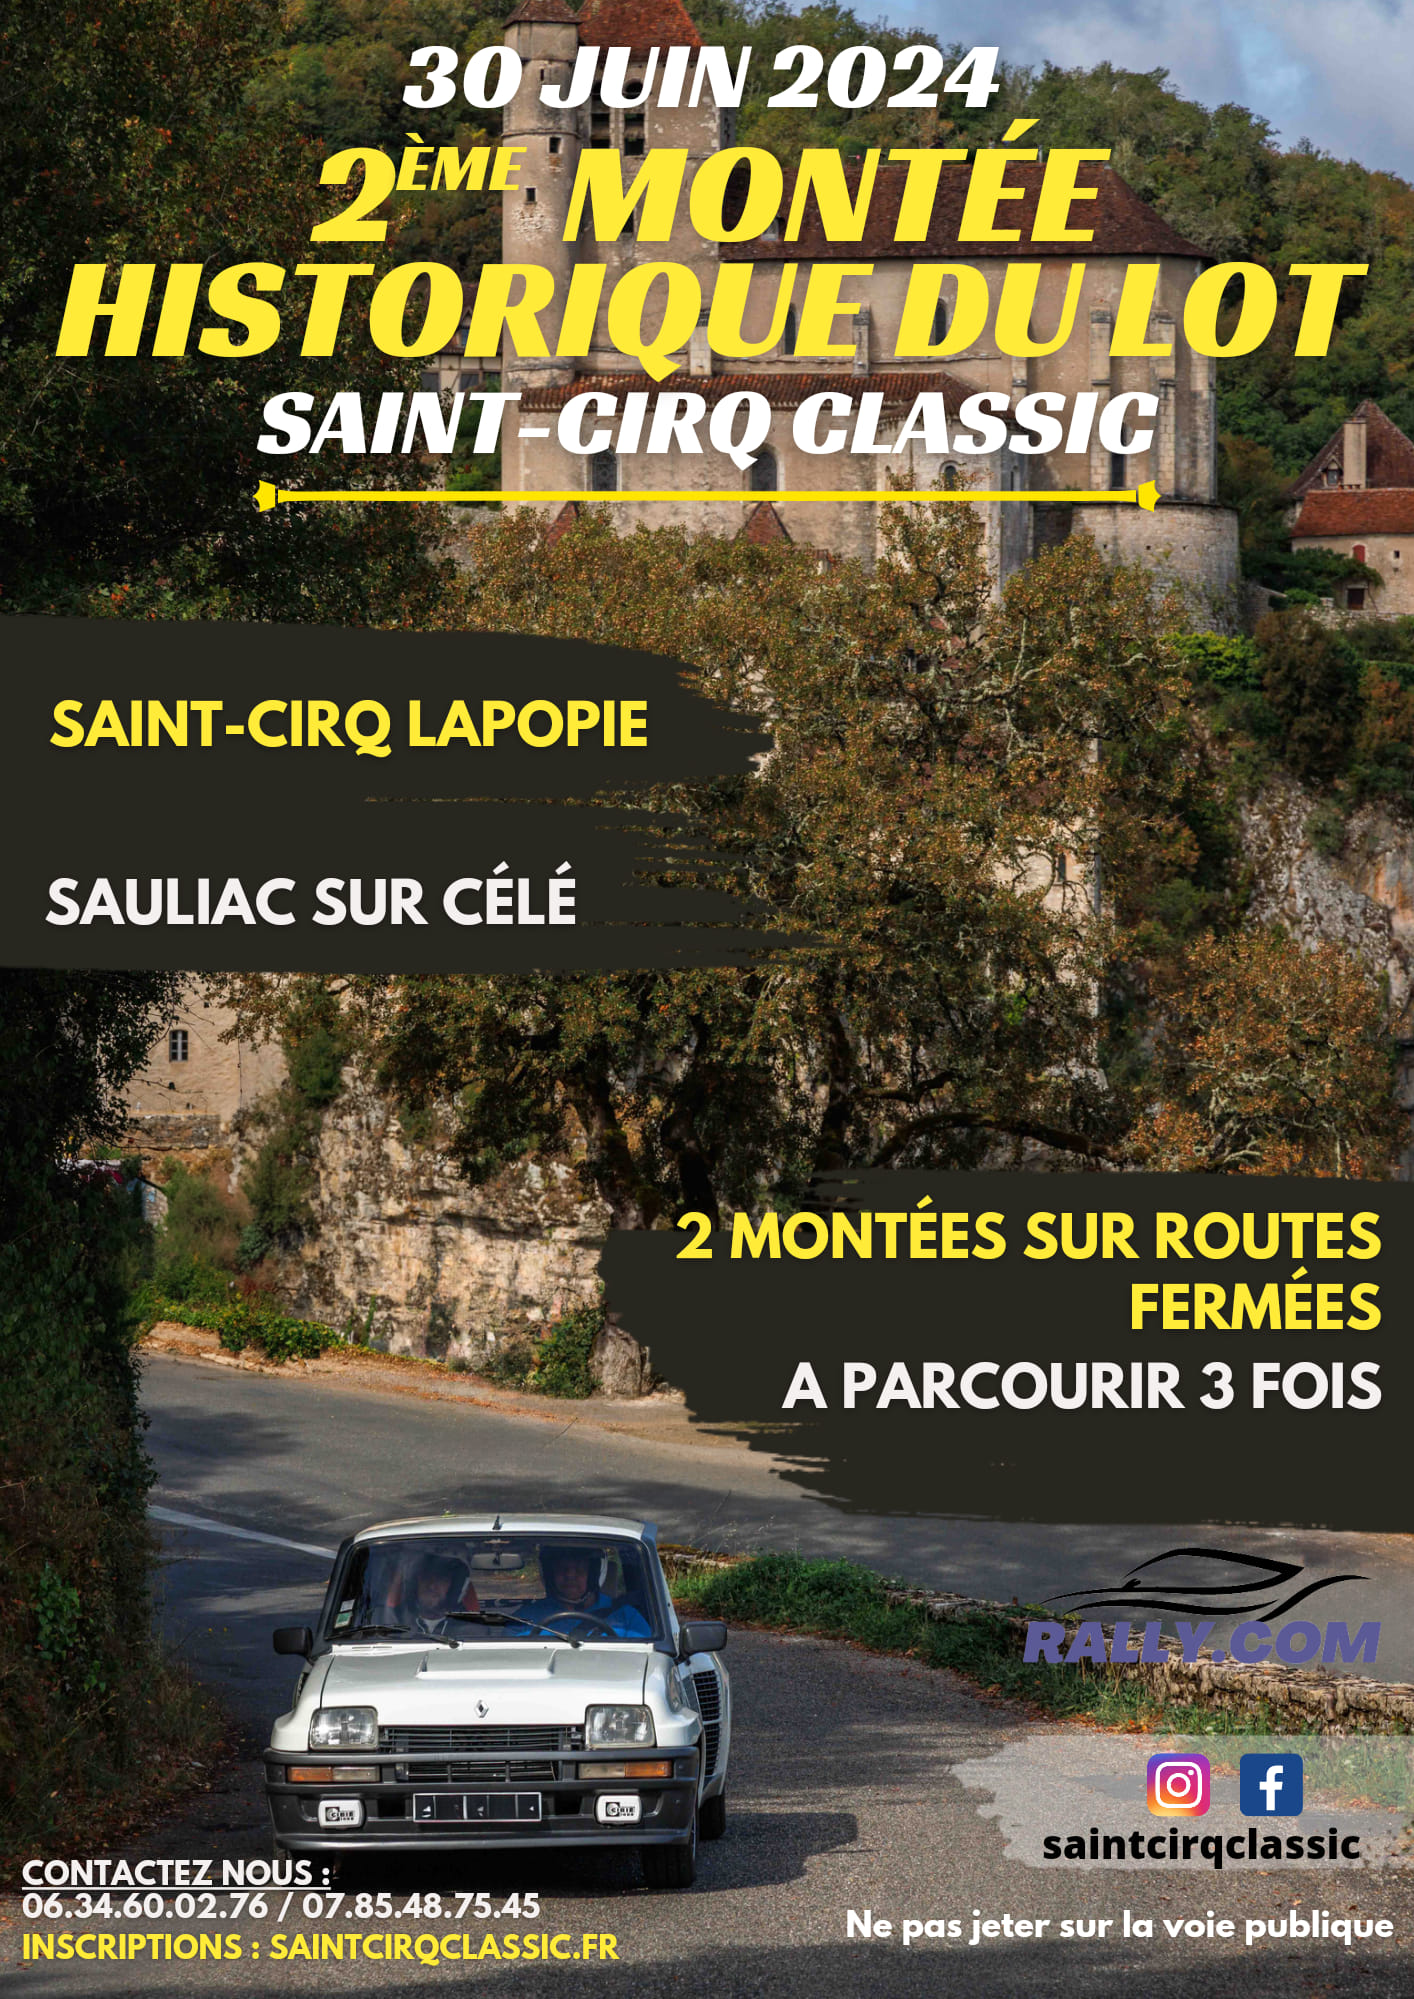 Saint-Cirq classic, 2ème montée historique du Lot